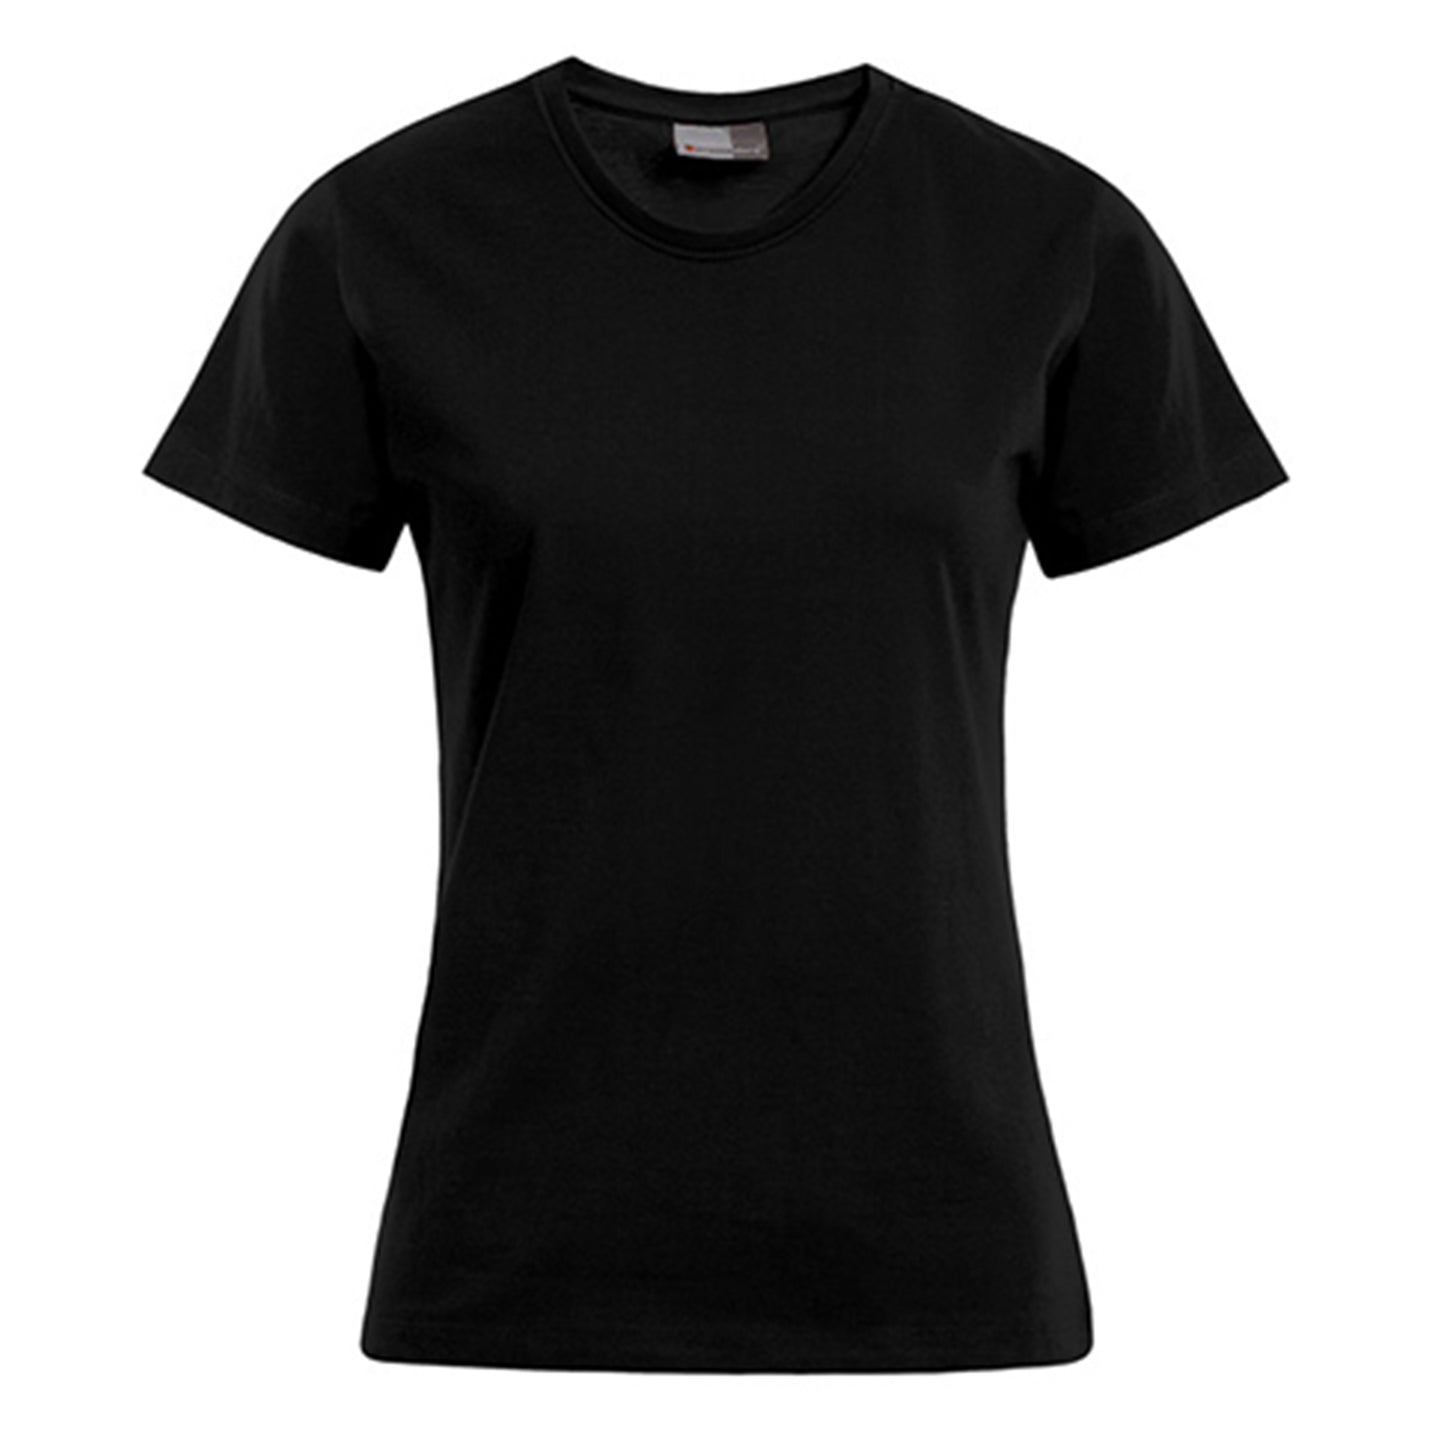 Personalisierbares Premium Damen T-Shirt - Schwarz